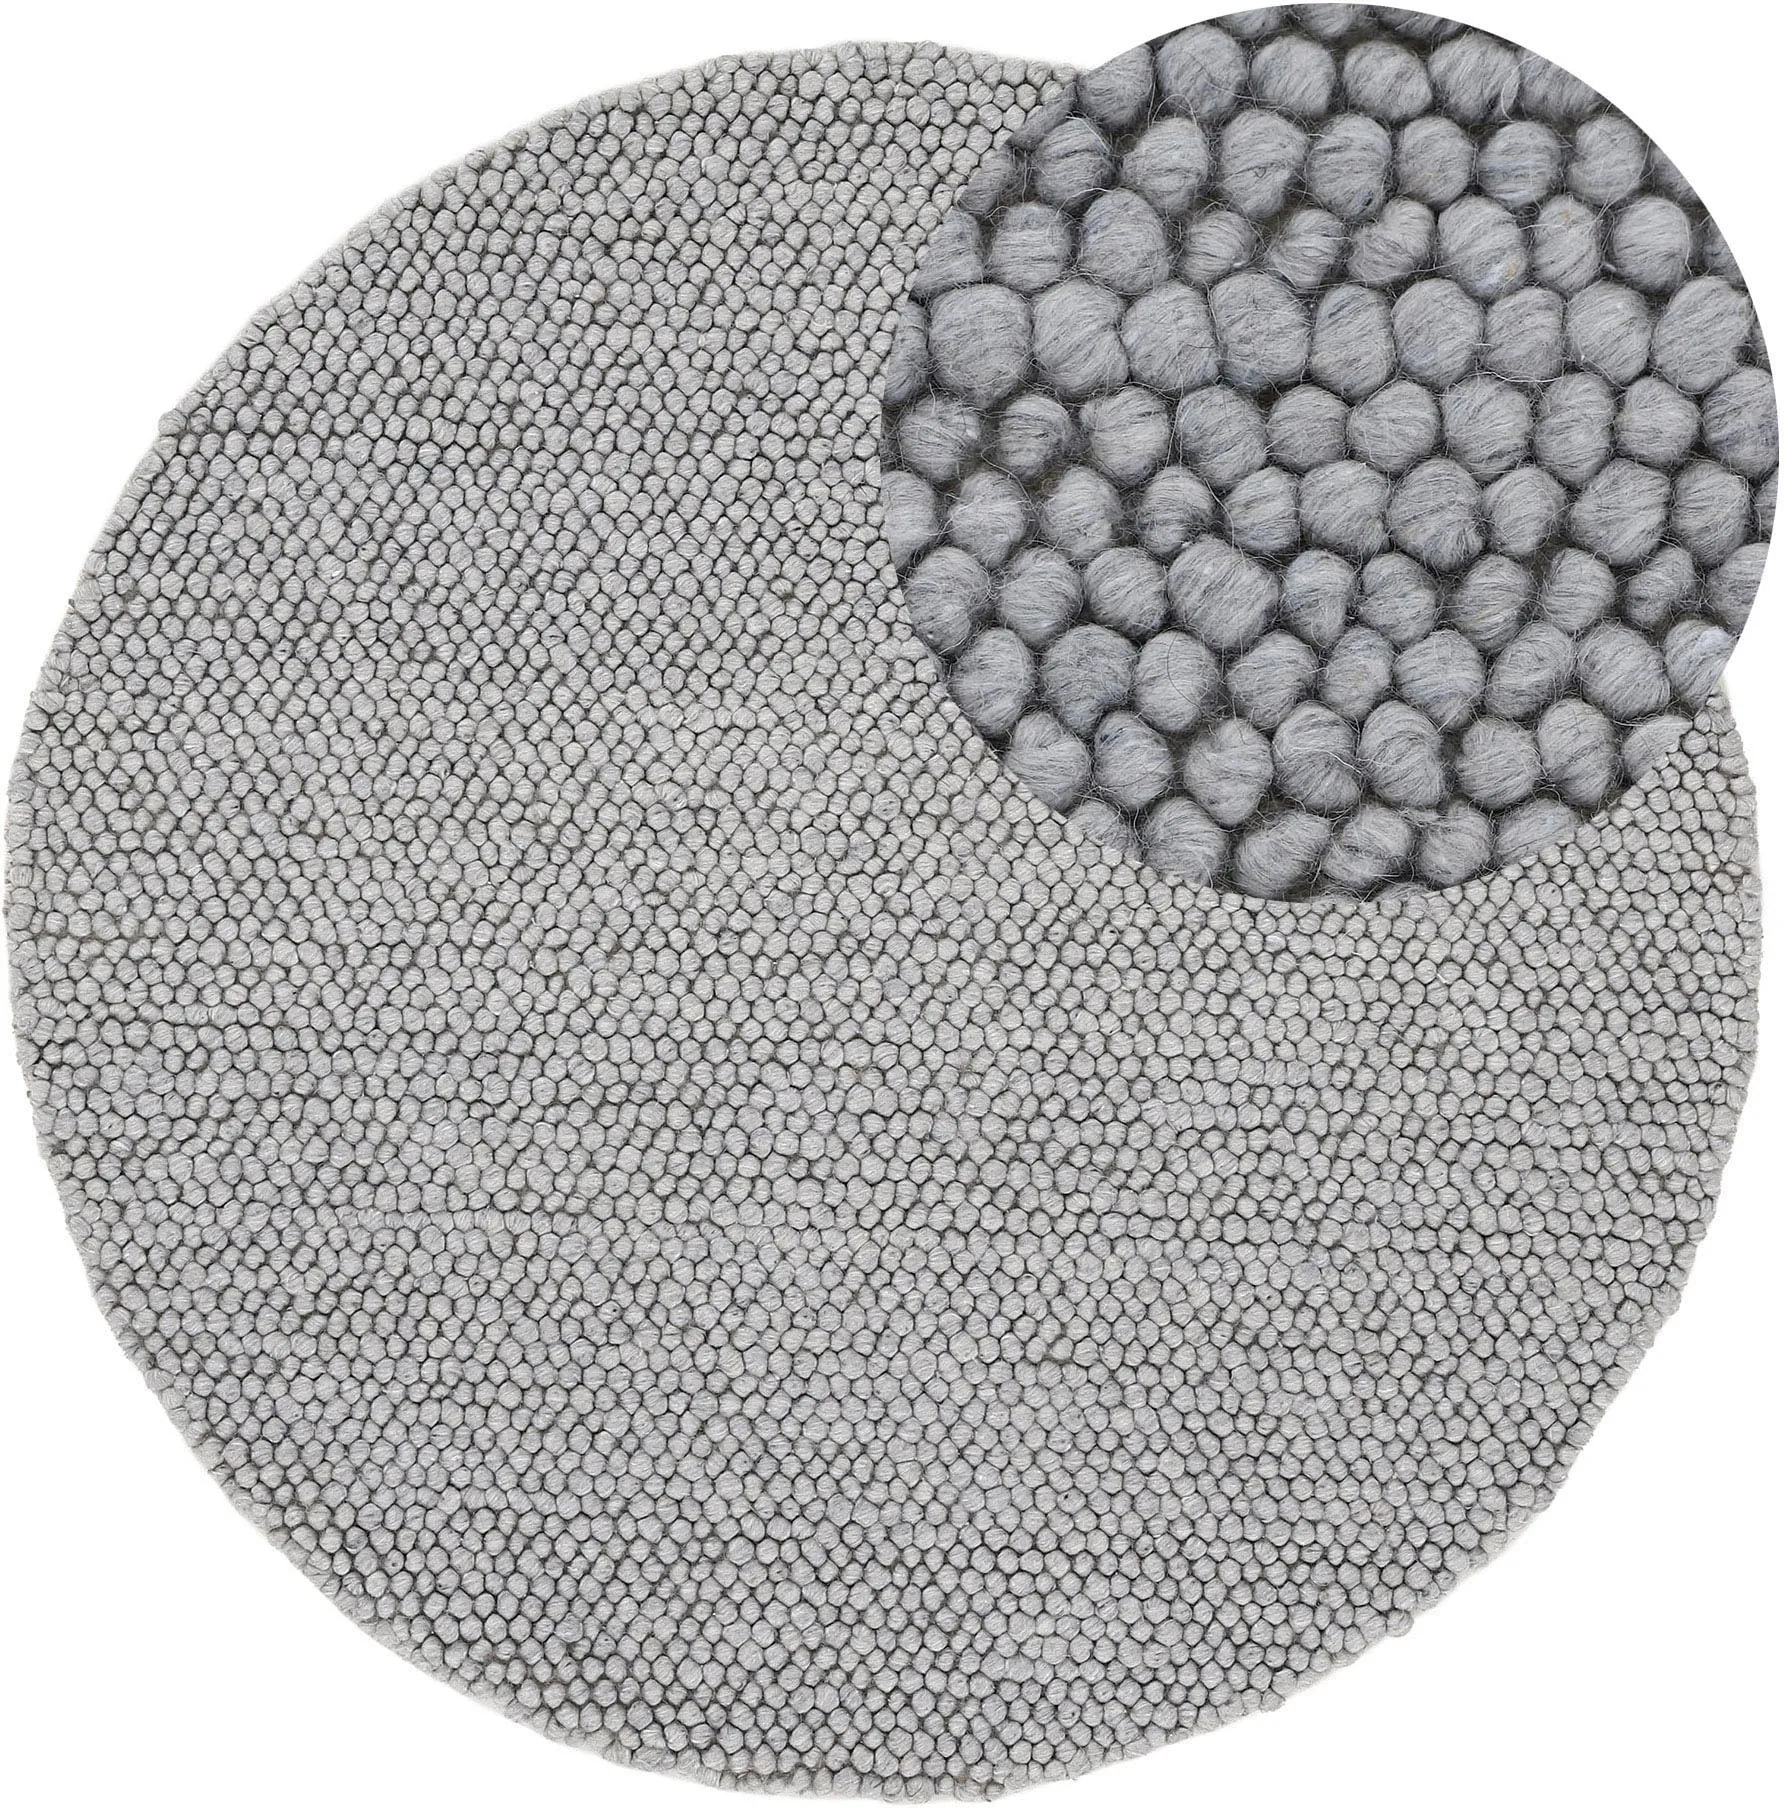 carpetfine Teppich »Calo«, rund, Handweb Teppich, Uni-Farben, meliert, handgewebt, 70% Wolle carpetfine grau Ø 150 cm